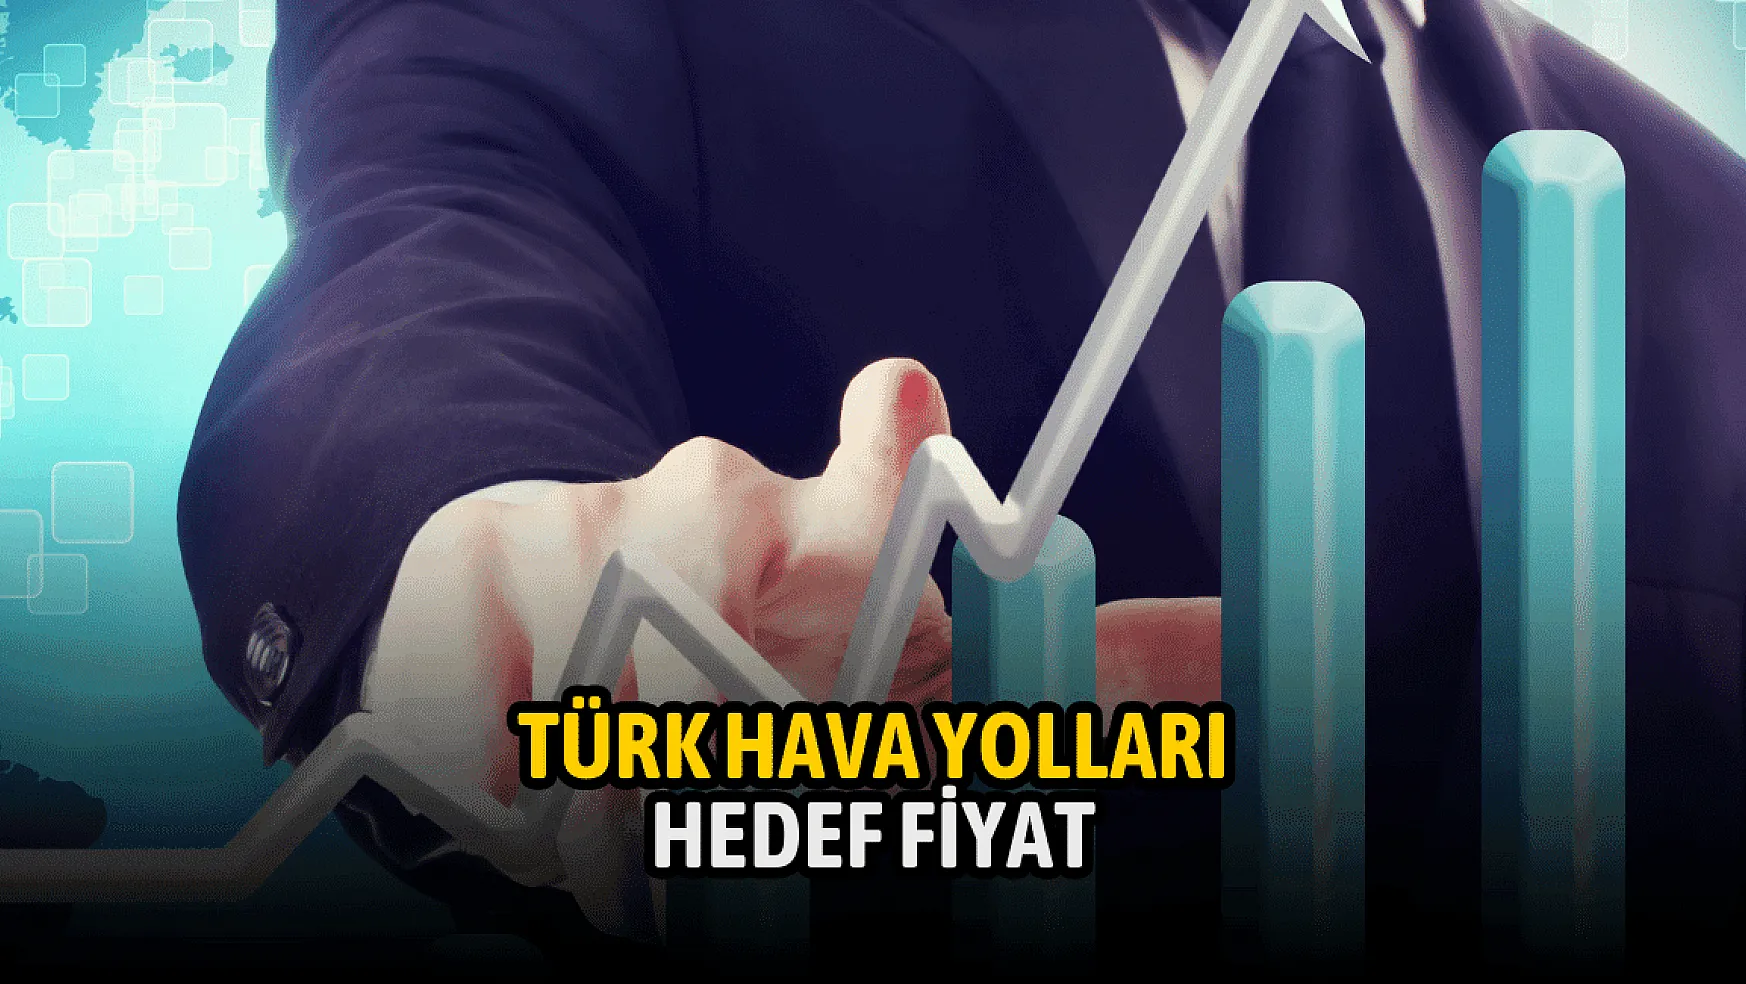 Türk Hava Yolları (THYAO) hissesi için dikkat çeken hedef fiyat!